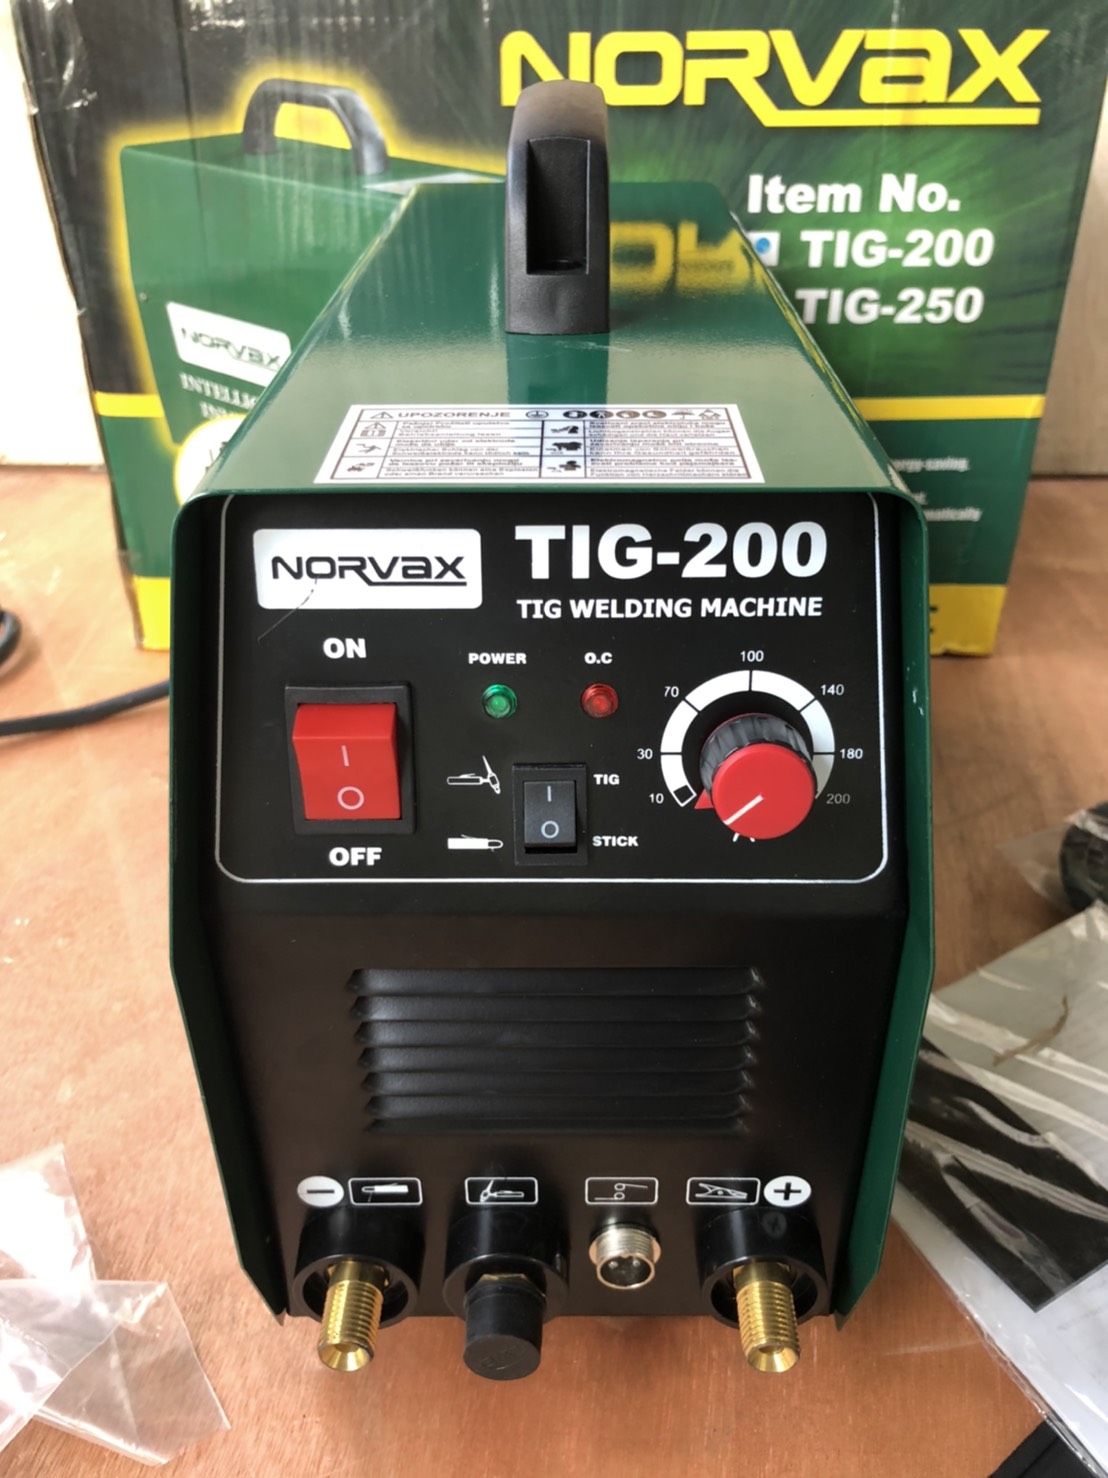 ตู้เชื่อมอินเวอร์เตอร์ 2 ระบบ (เชื่อมไฟฟ้าและเชื่อมอาร์กอน) Intelligent welding machine ยี่ห้อ NORVAX รุ่น TIG-200